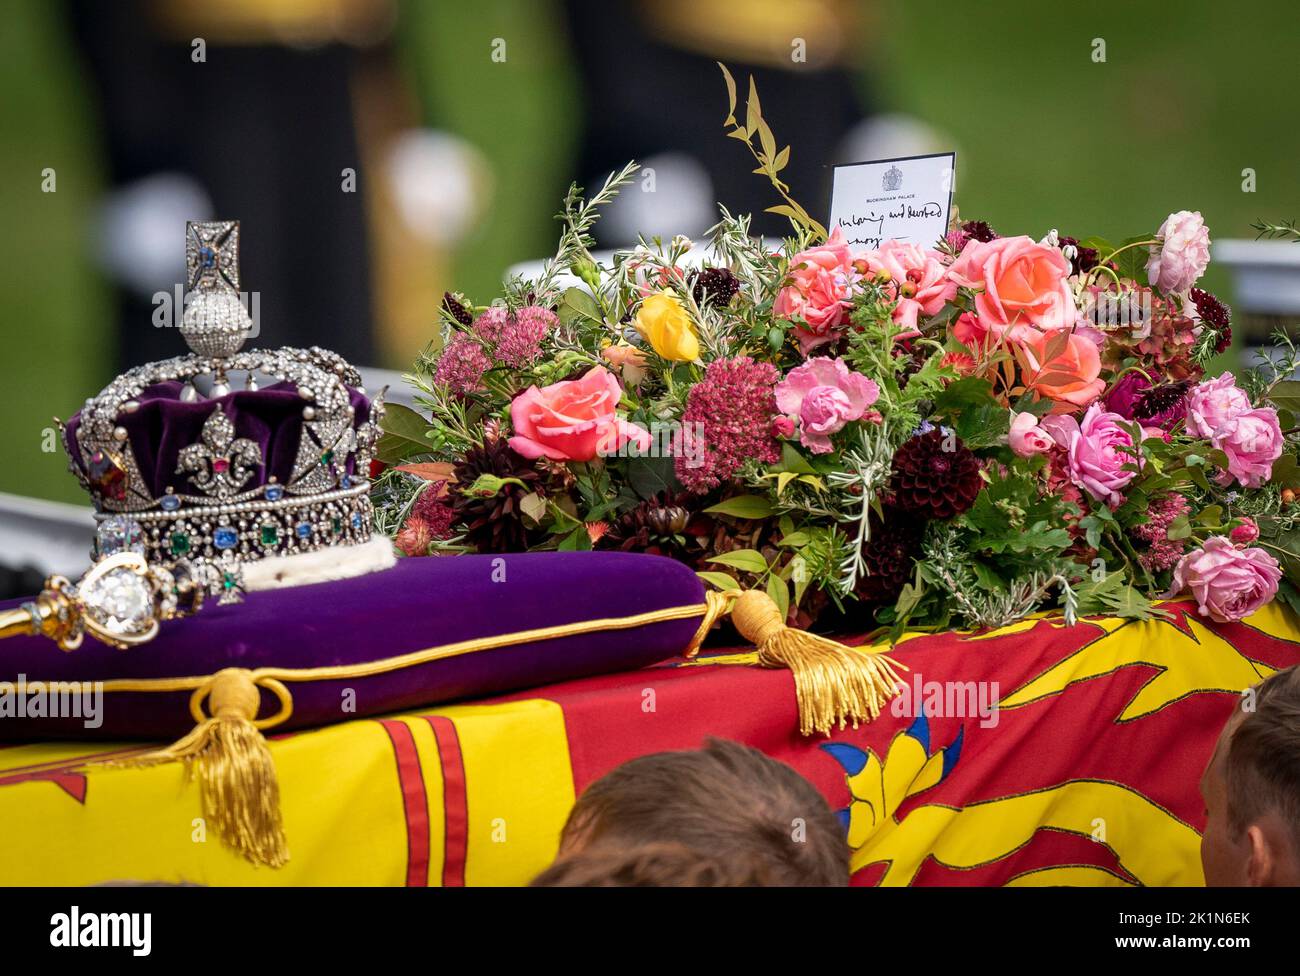 La carrozza della pistola di Stato trasporta la bara della regina Elisabetta II, drappeggiato nello Standard reale con la corona di Stato imperiale e l'orbo e scettro del Sovrano, nella processione cerimoniale dopo il suo funerale di Stato all'Abbazia di Westminster, Londra. Foto Stock